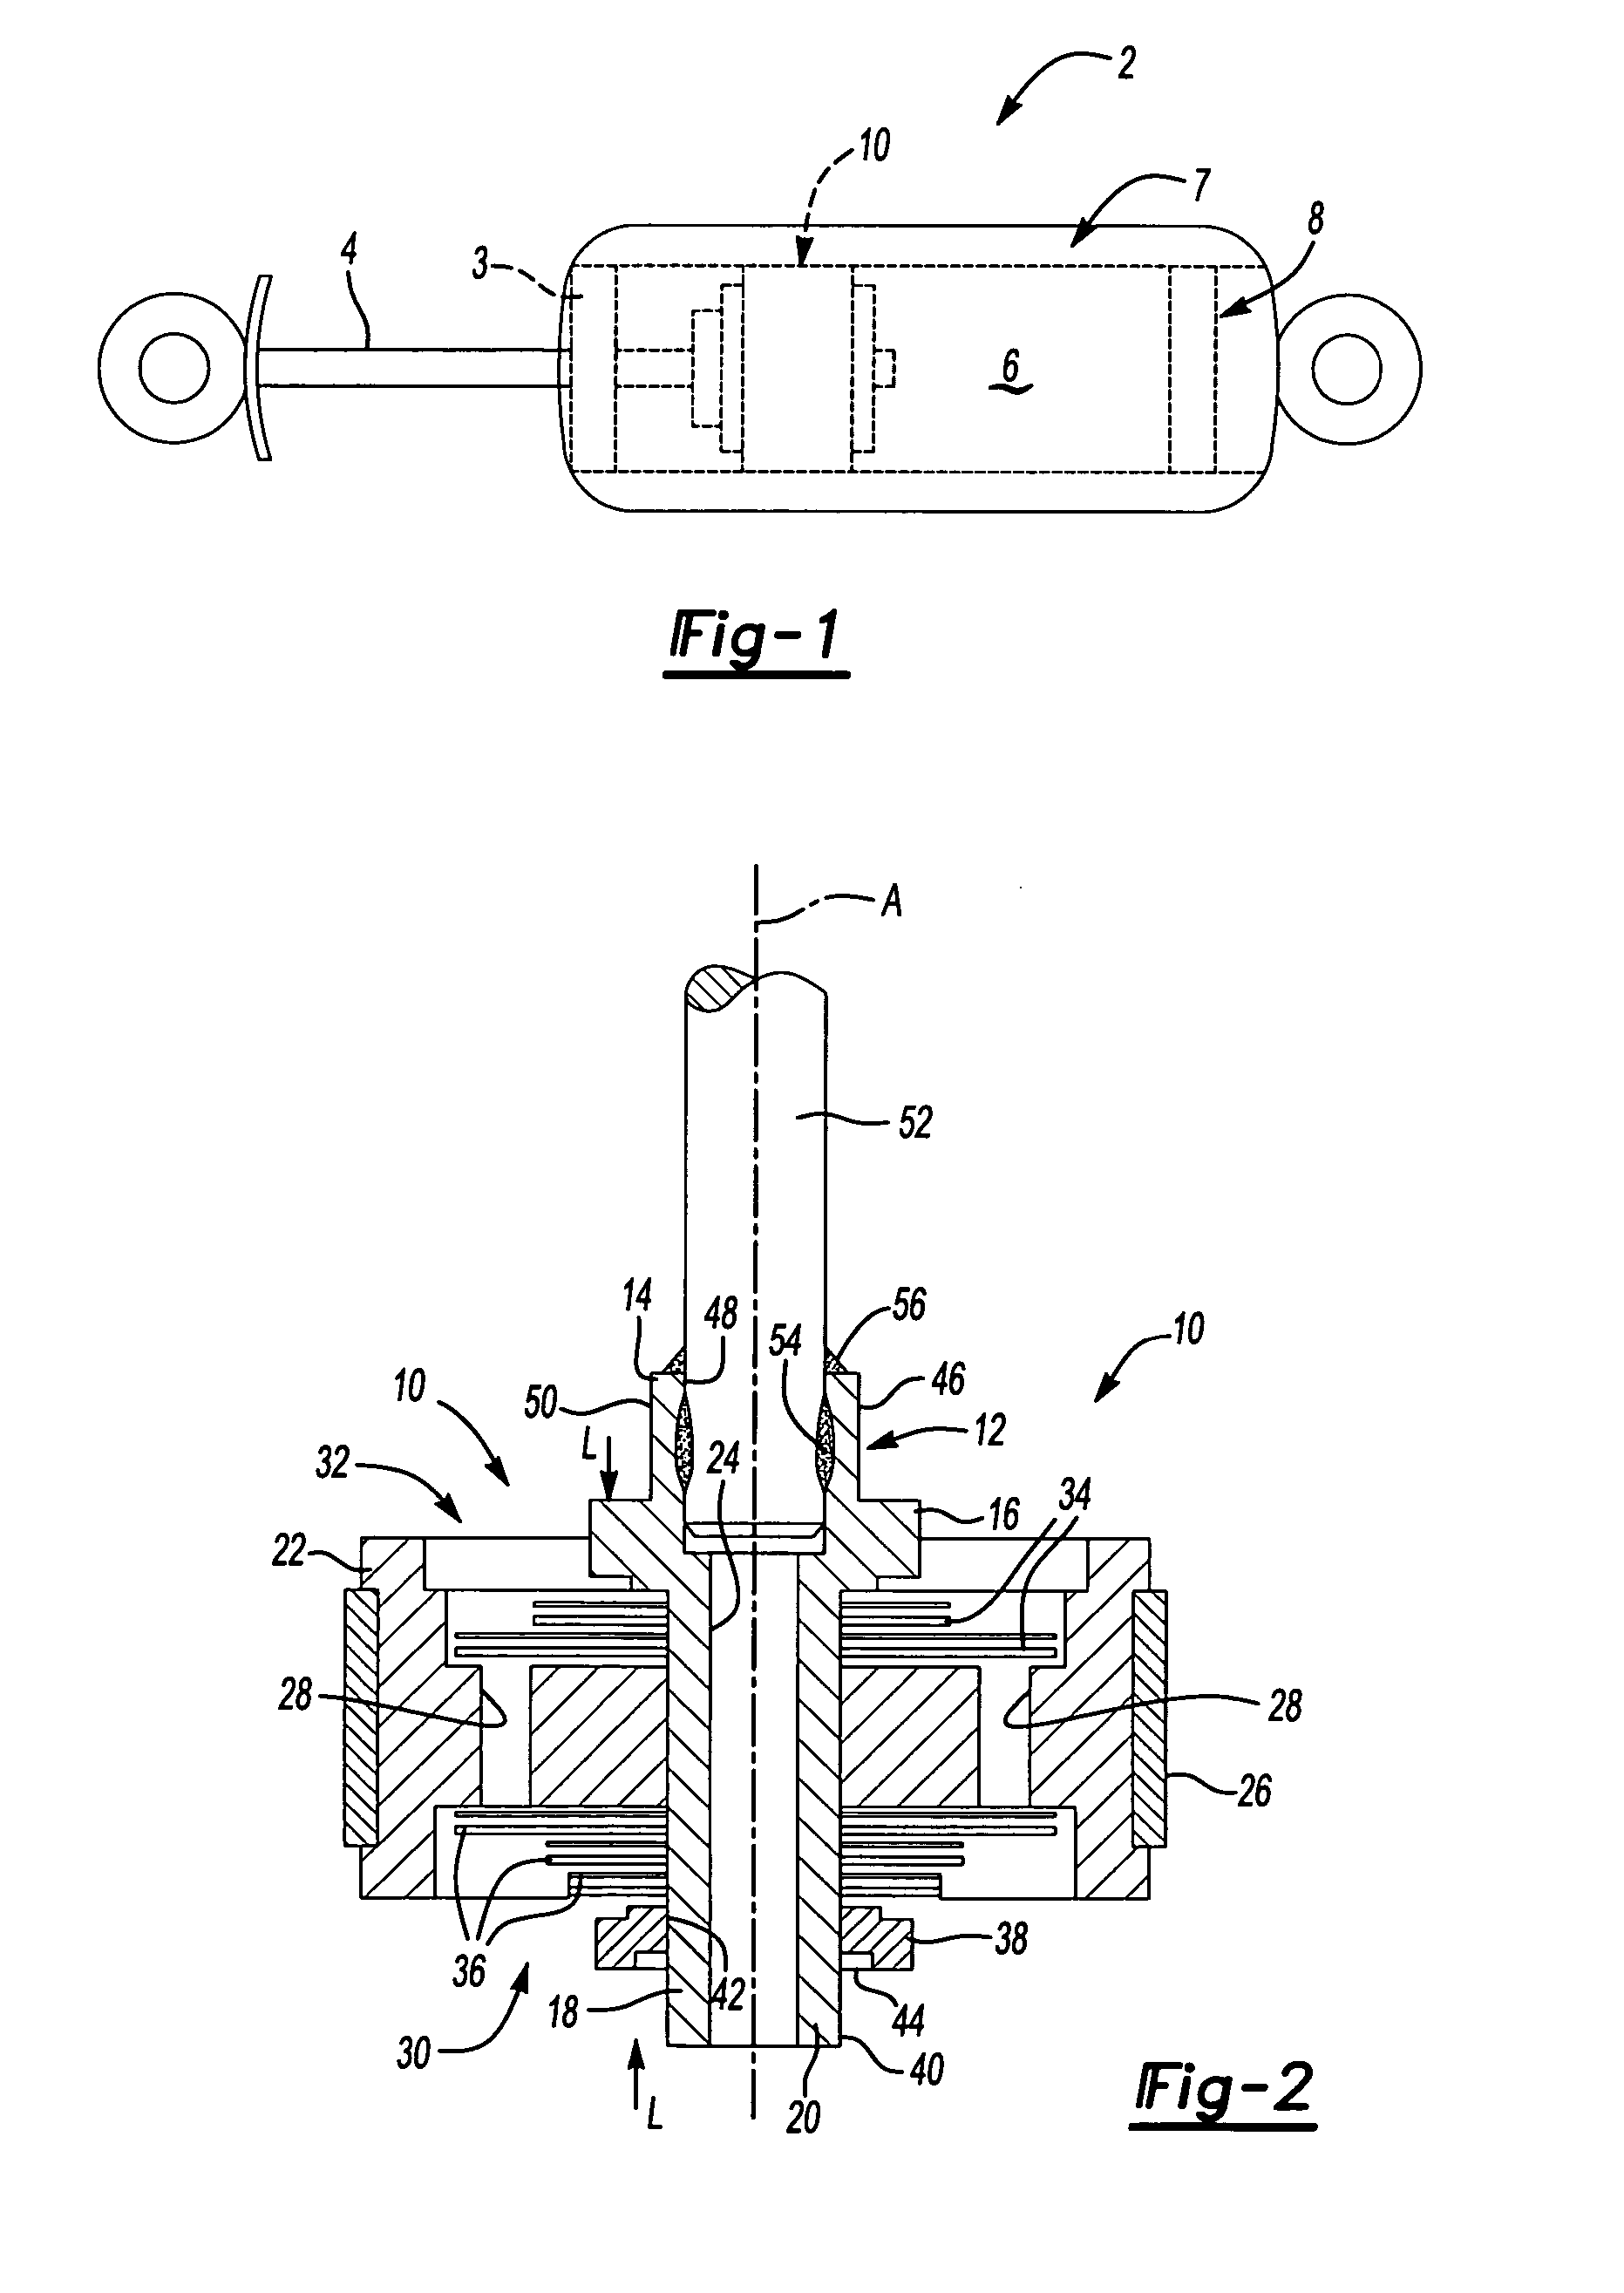 Common damper hub for valve bodies